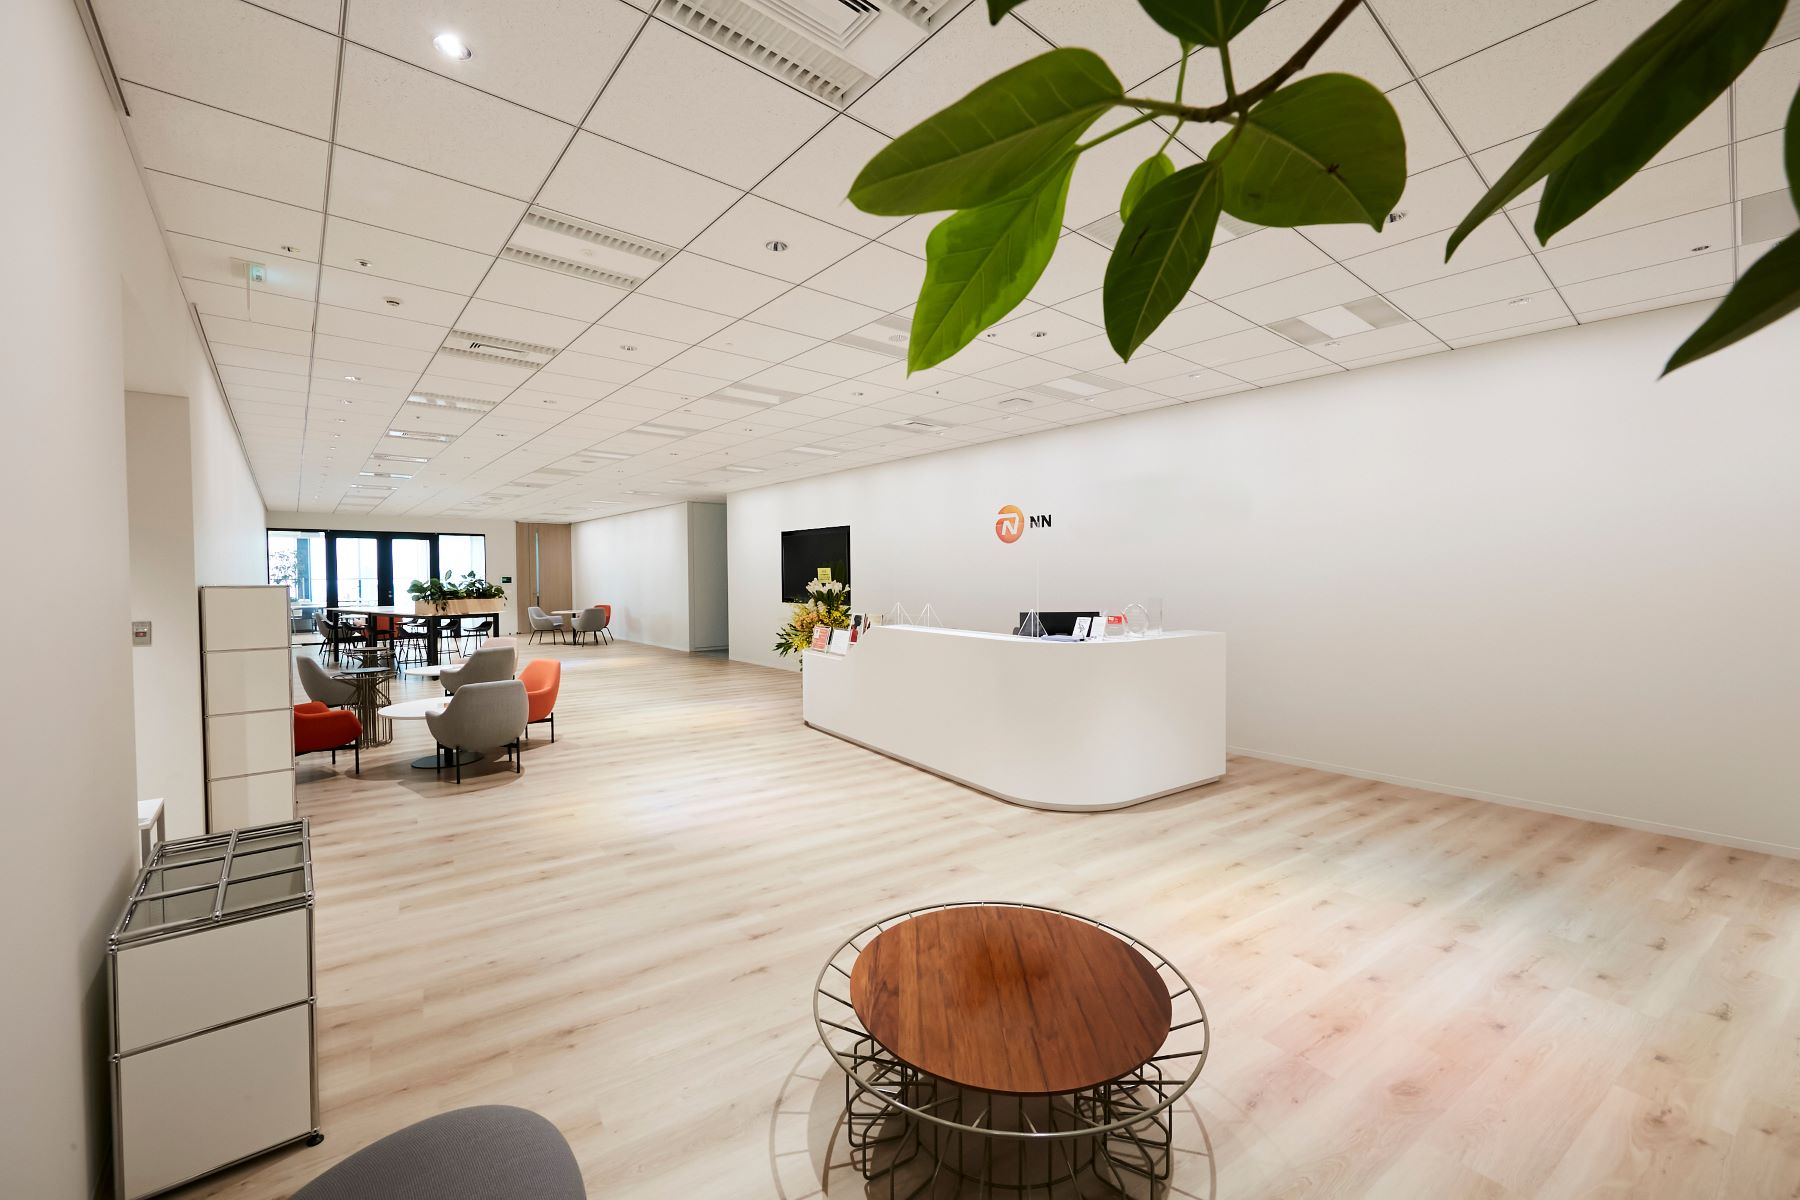 オフィスのロビーは白を基調としており、広く、すっきりしている。温かみがあり、かつデザイン性の高いチェアとテーブルが所々に配置され、モダンな印象を与えている。